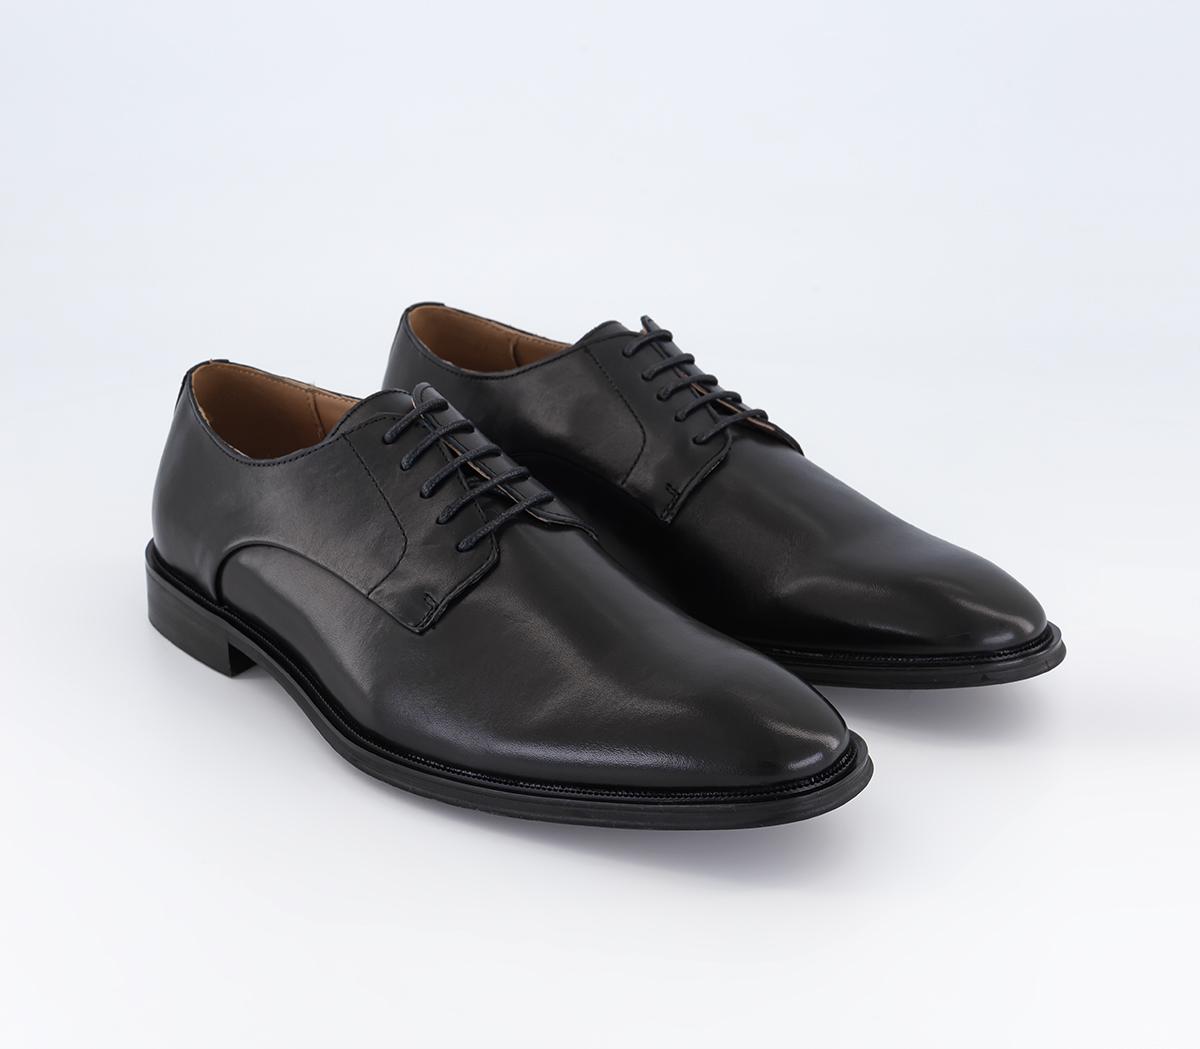 OFFICE Midland Plain Toe Derby Shoes Black Leather - Men’s Smart Shoes